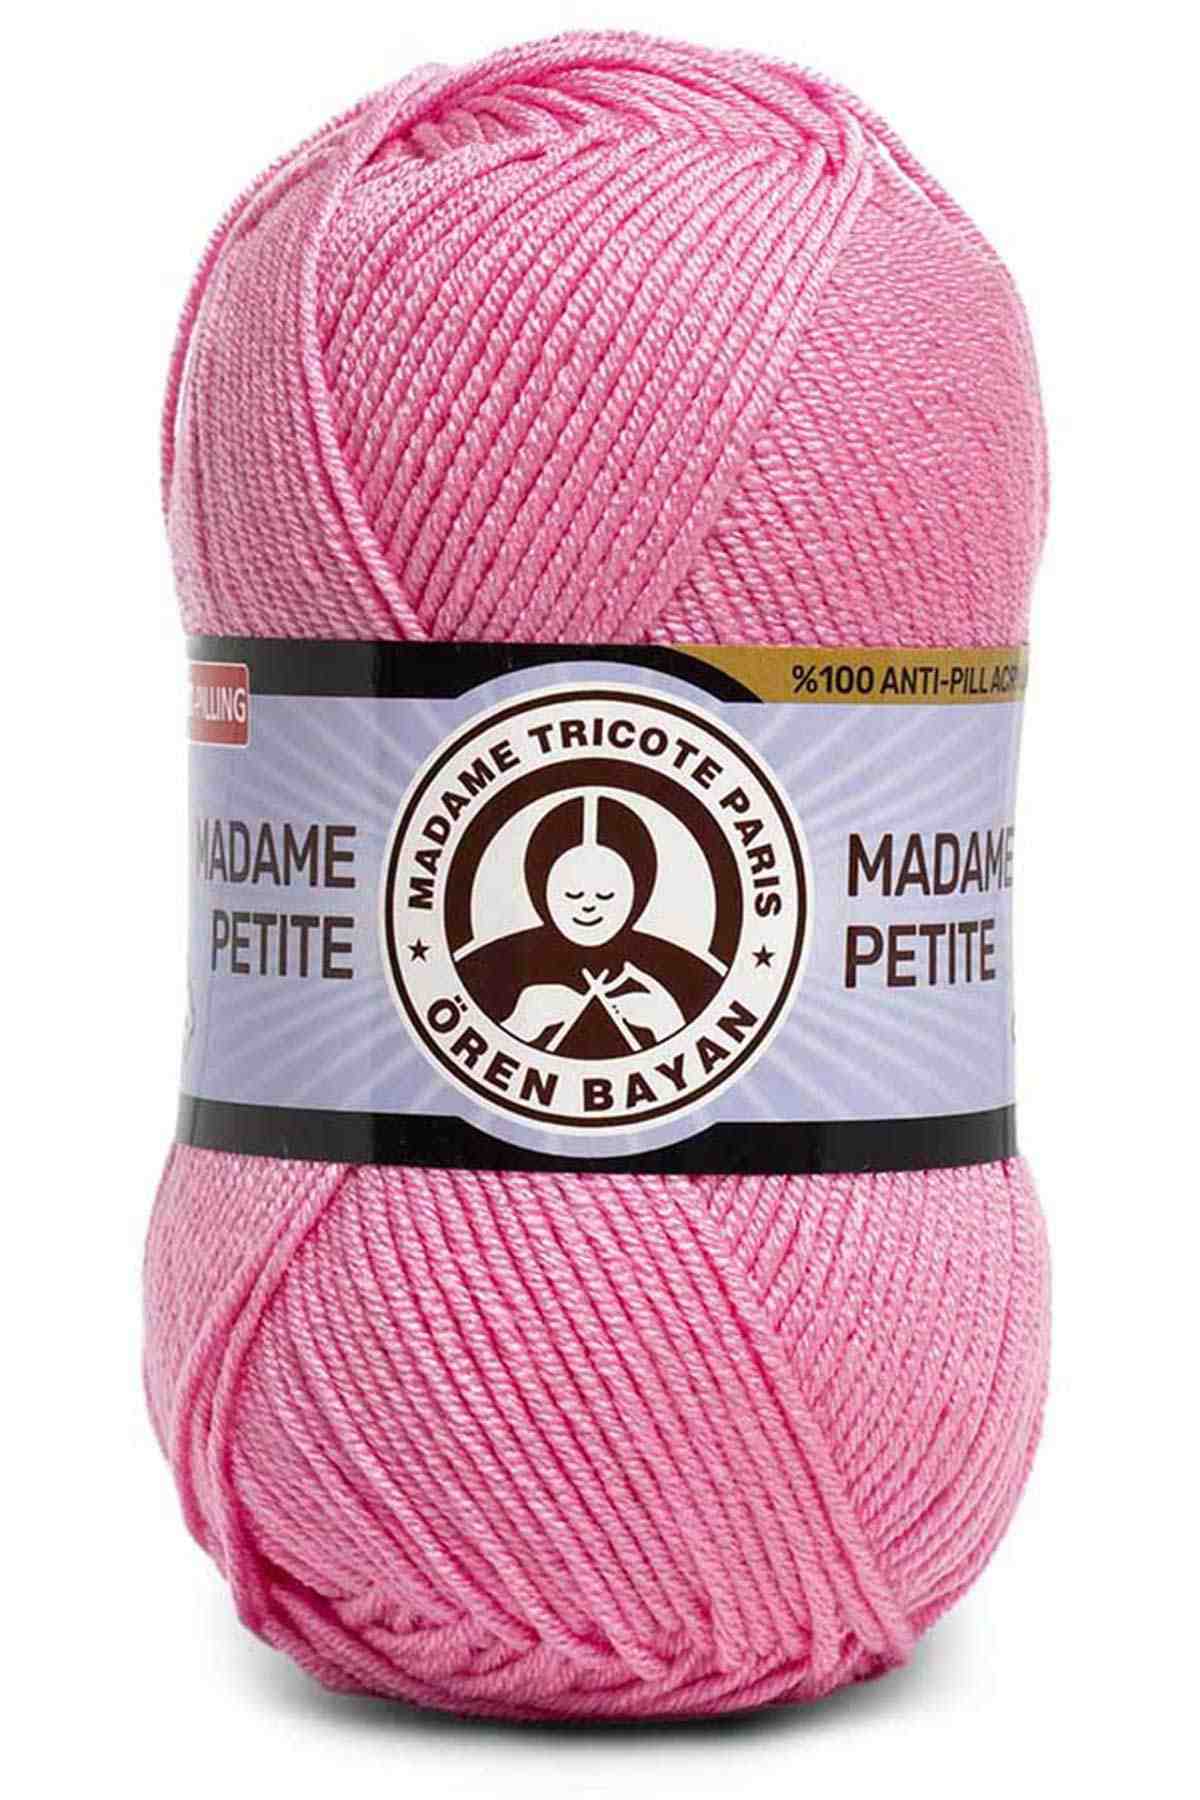 Madame Tricote Paris Madame Petite Anti-Pilling Acrylic Yarn